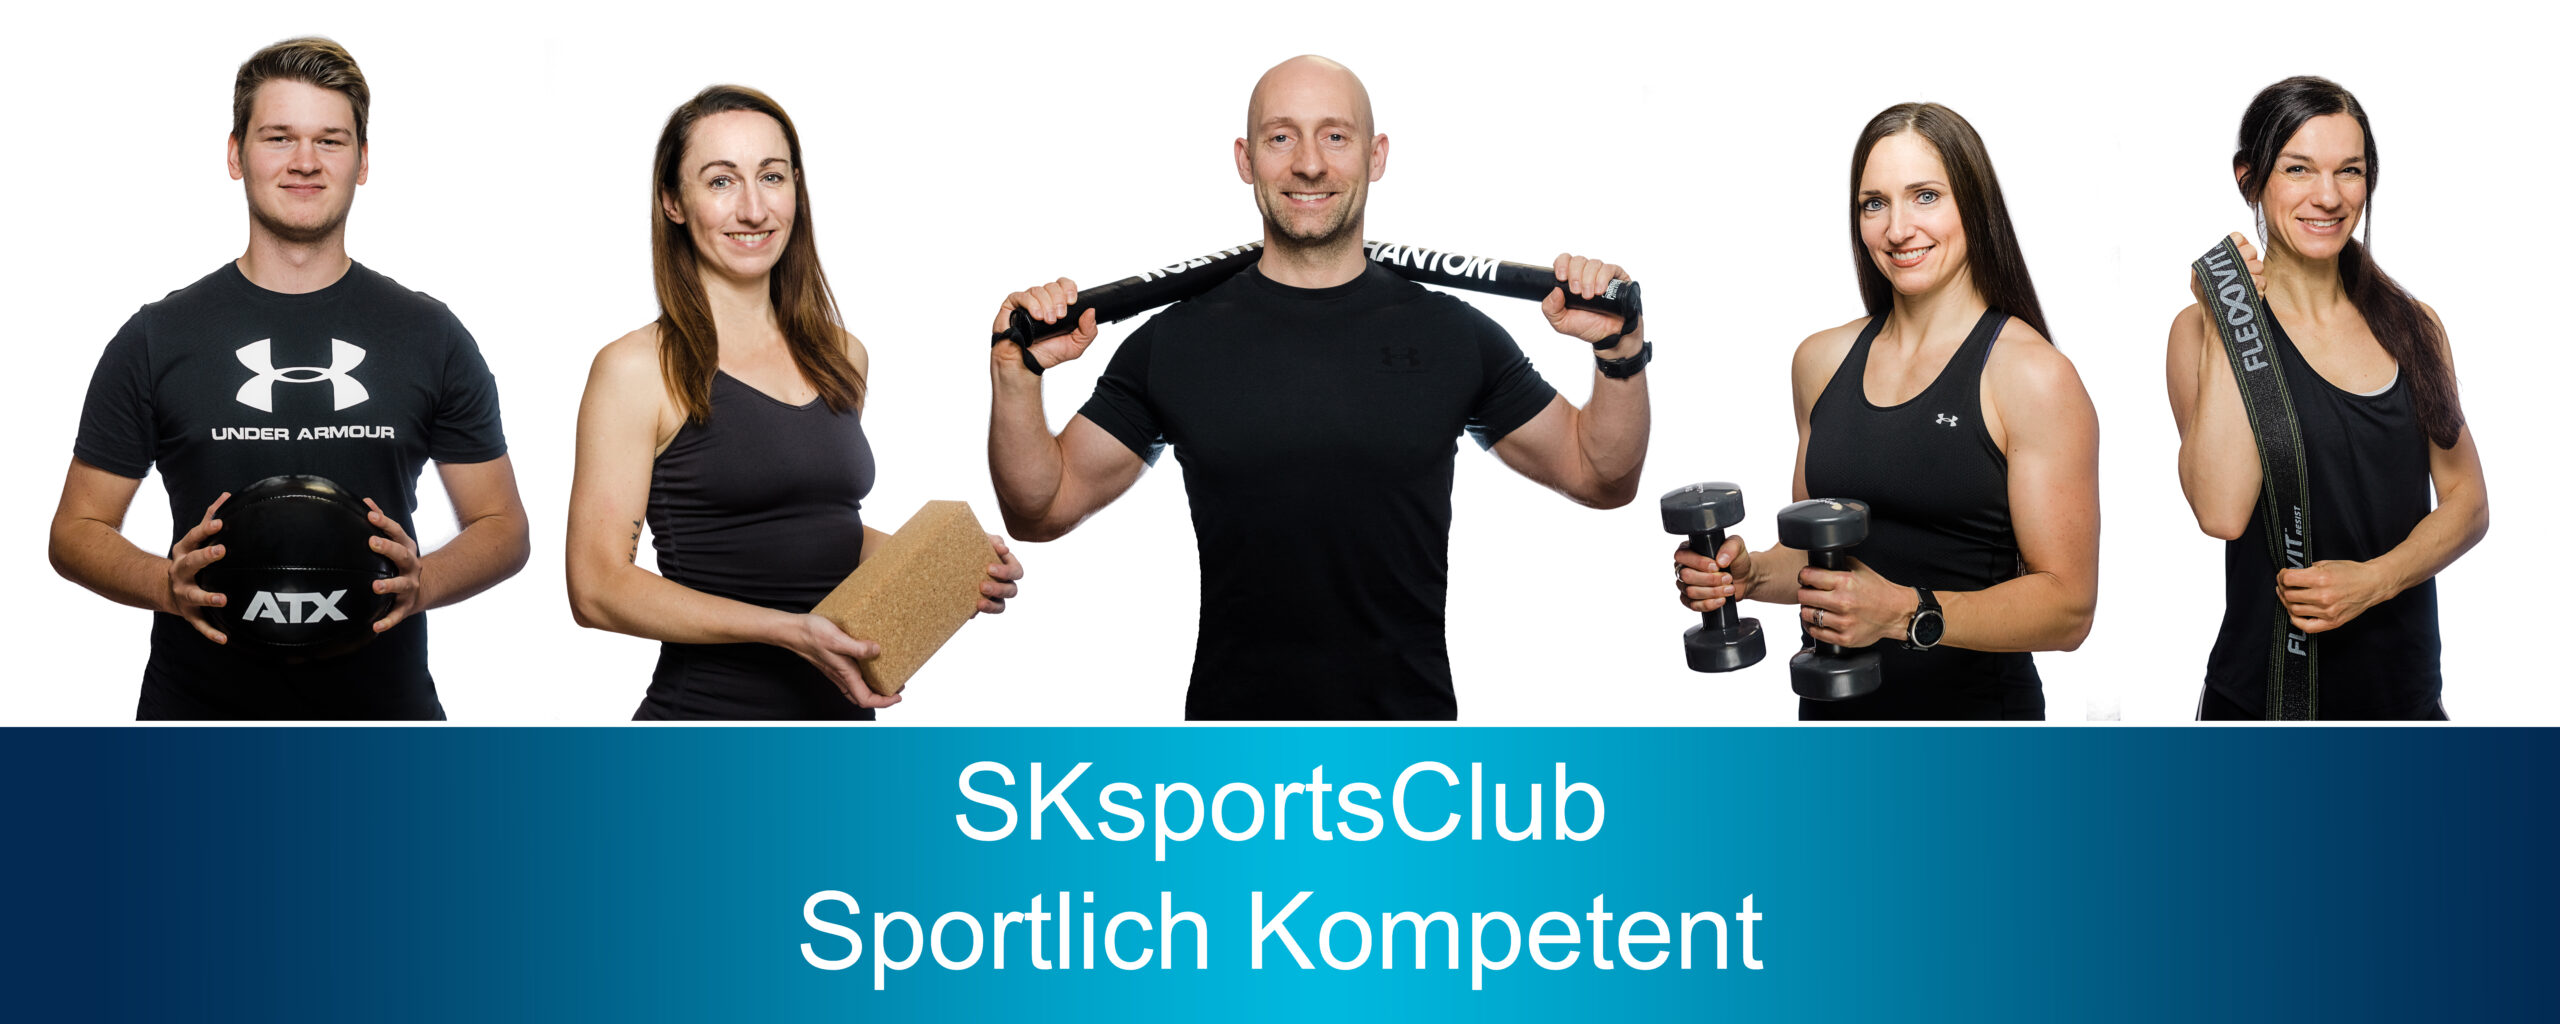 SKsportsClub - Sportlich Kompetent